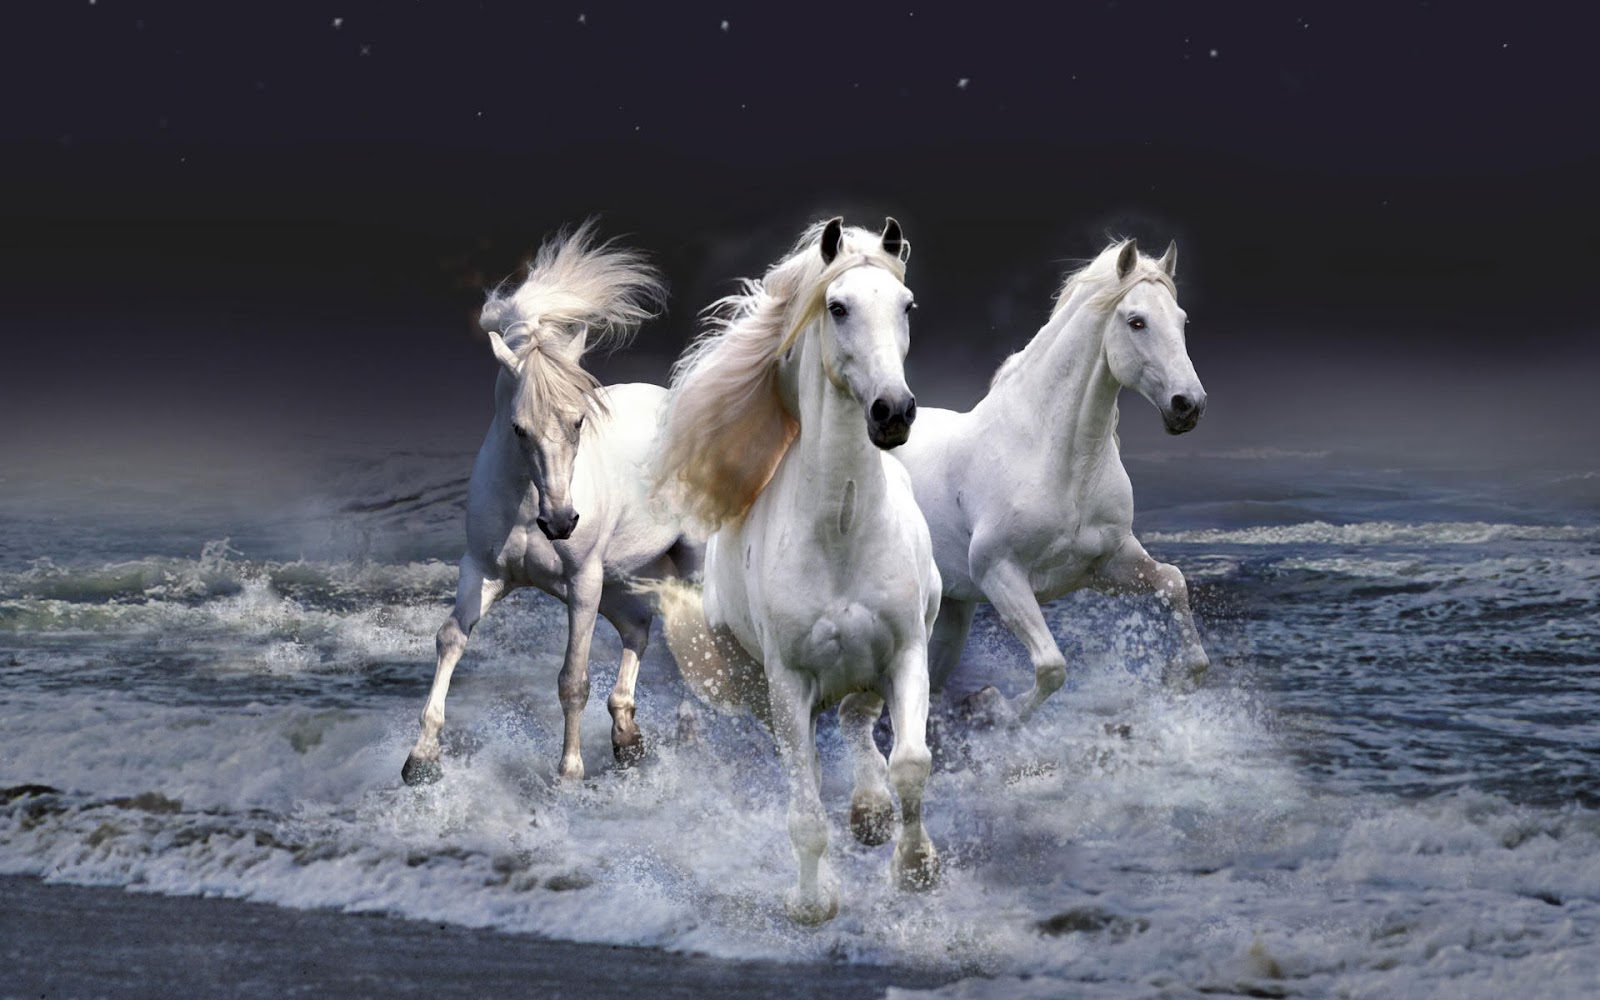 http://4.bp.blogspot.com/--1tE8wHvSUM/T40INy29ThI/AAAAAAAABhM/s_0HuRJMLVo/s1600/white-horses-sprinting-in-waves-wallpaper.jpg